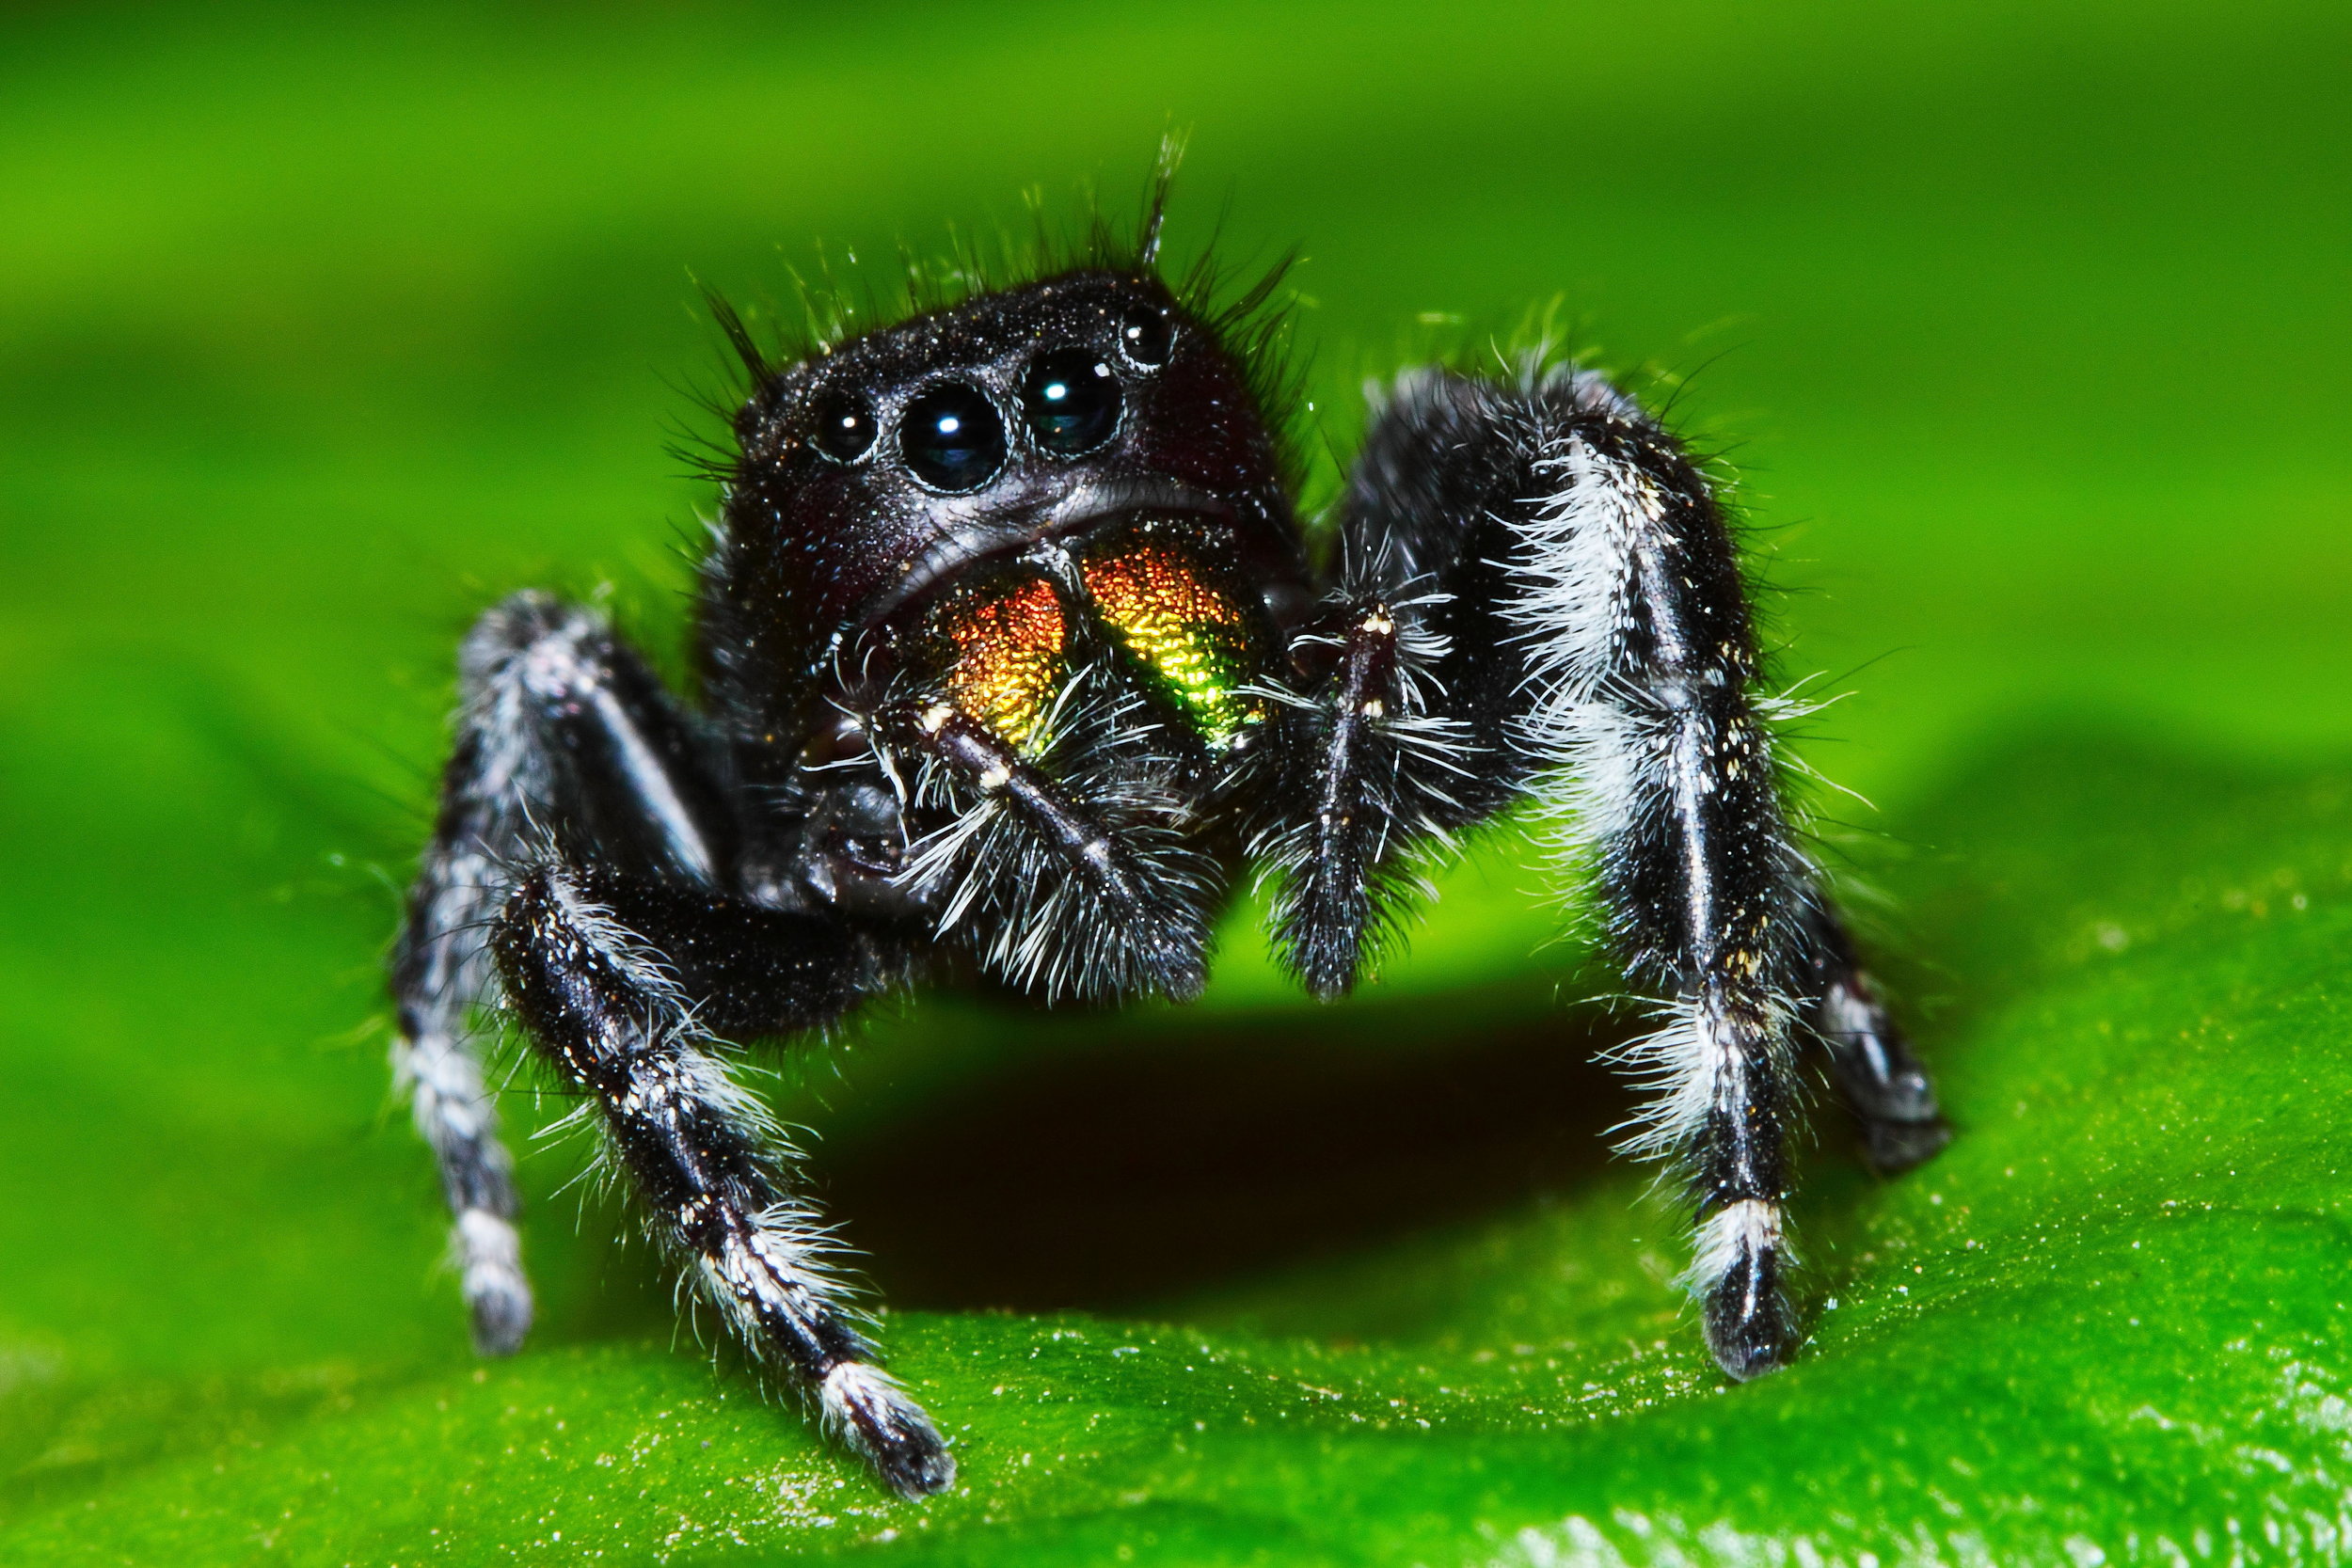 phidippus audax (daring jumping spider)